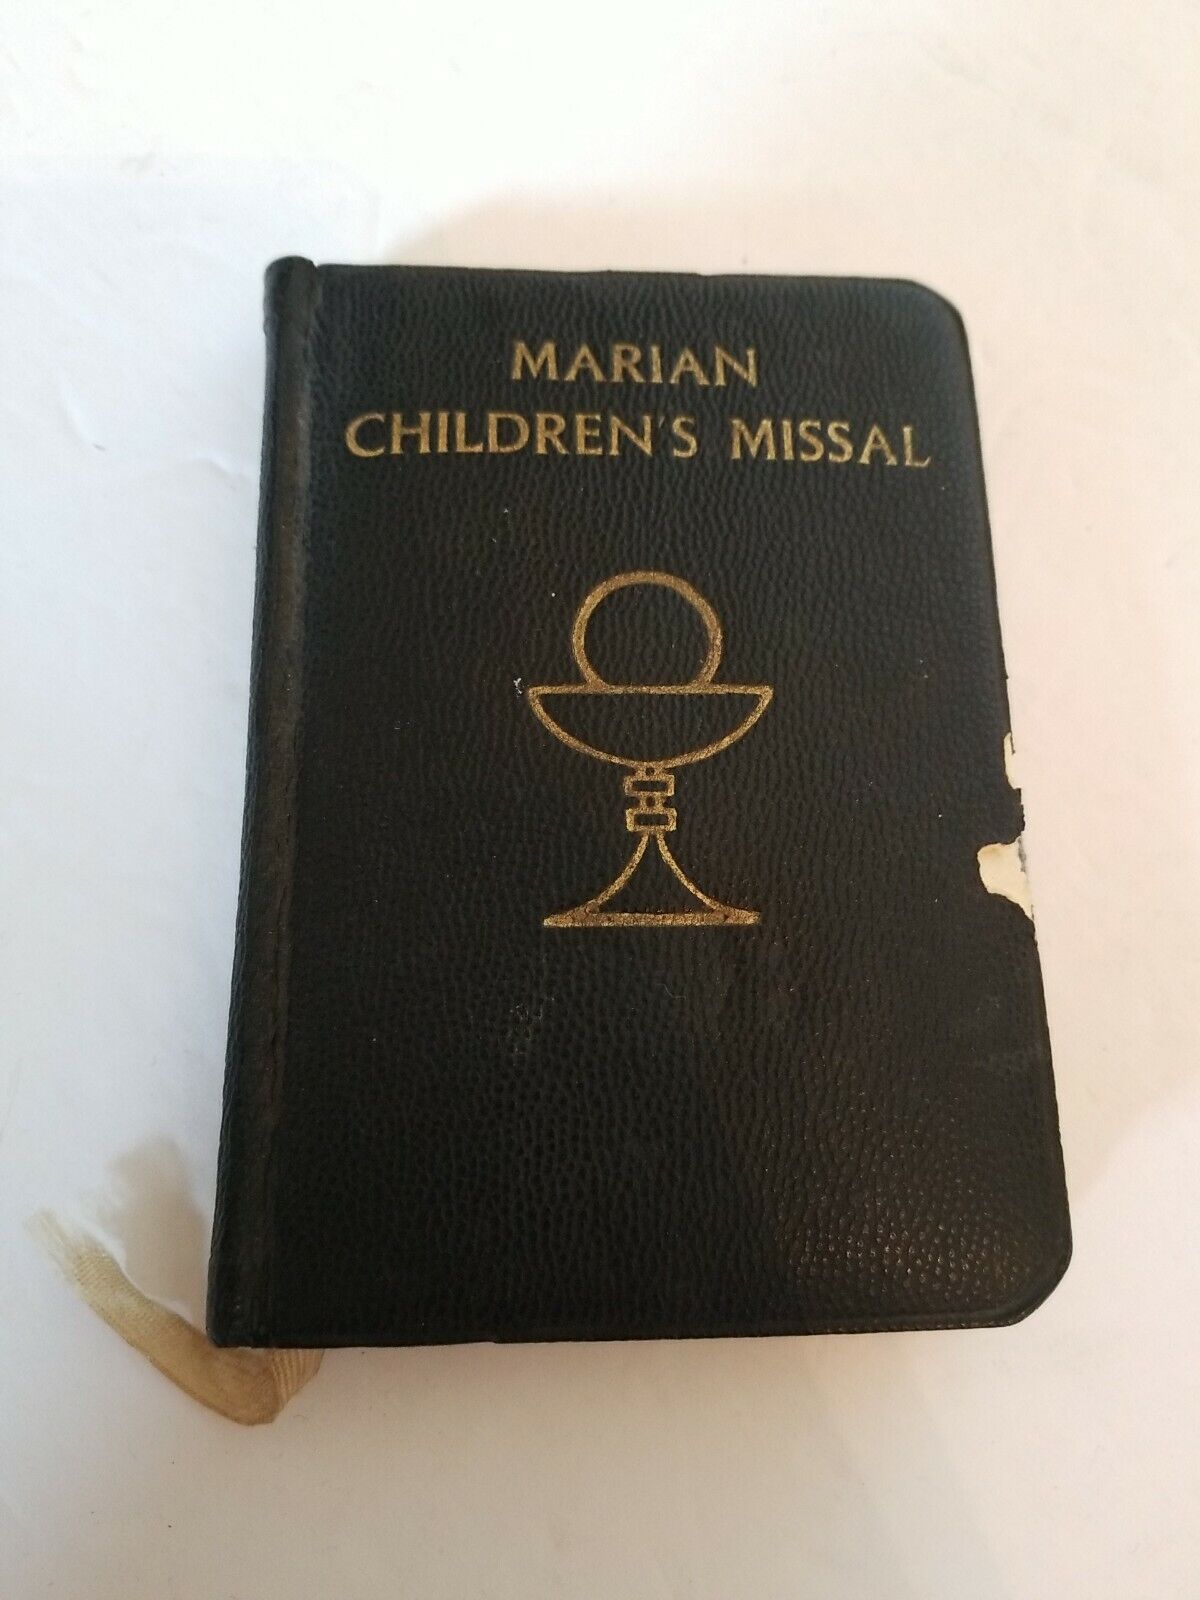 Marian Children's Missal 1958